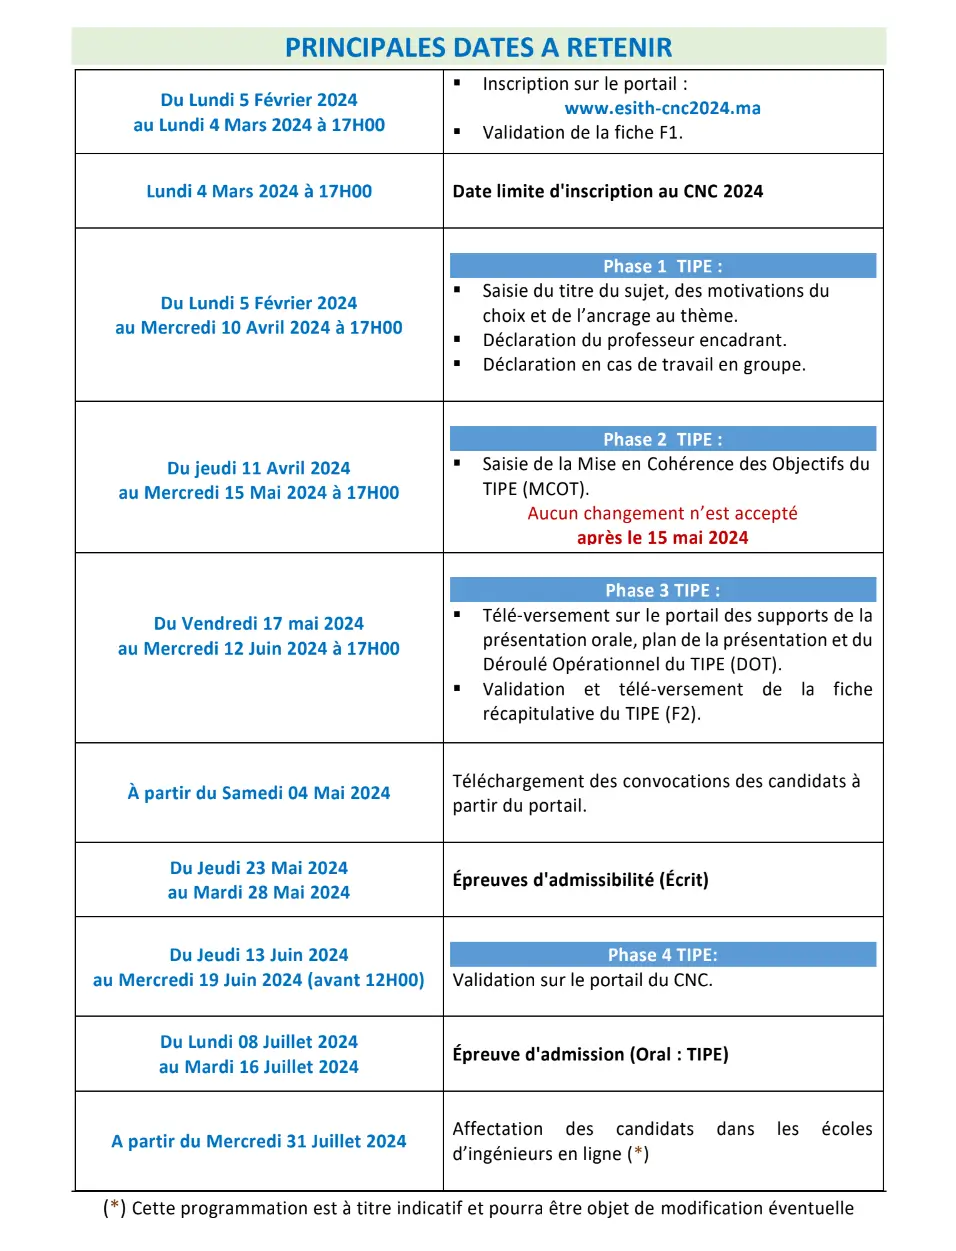 Principales dates à retenir Concours CNC 2024